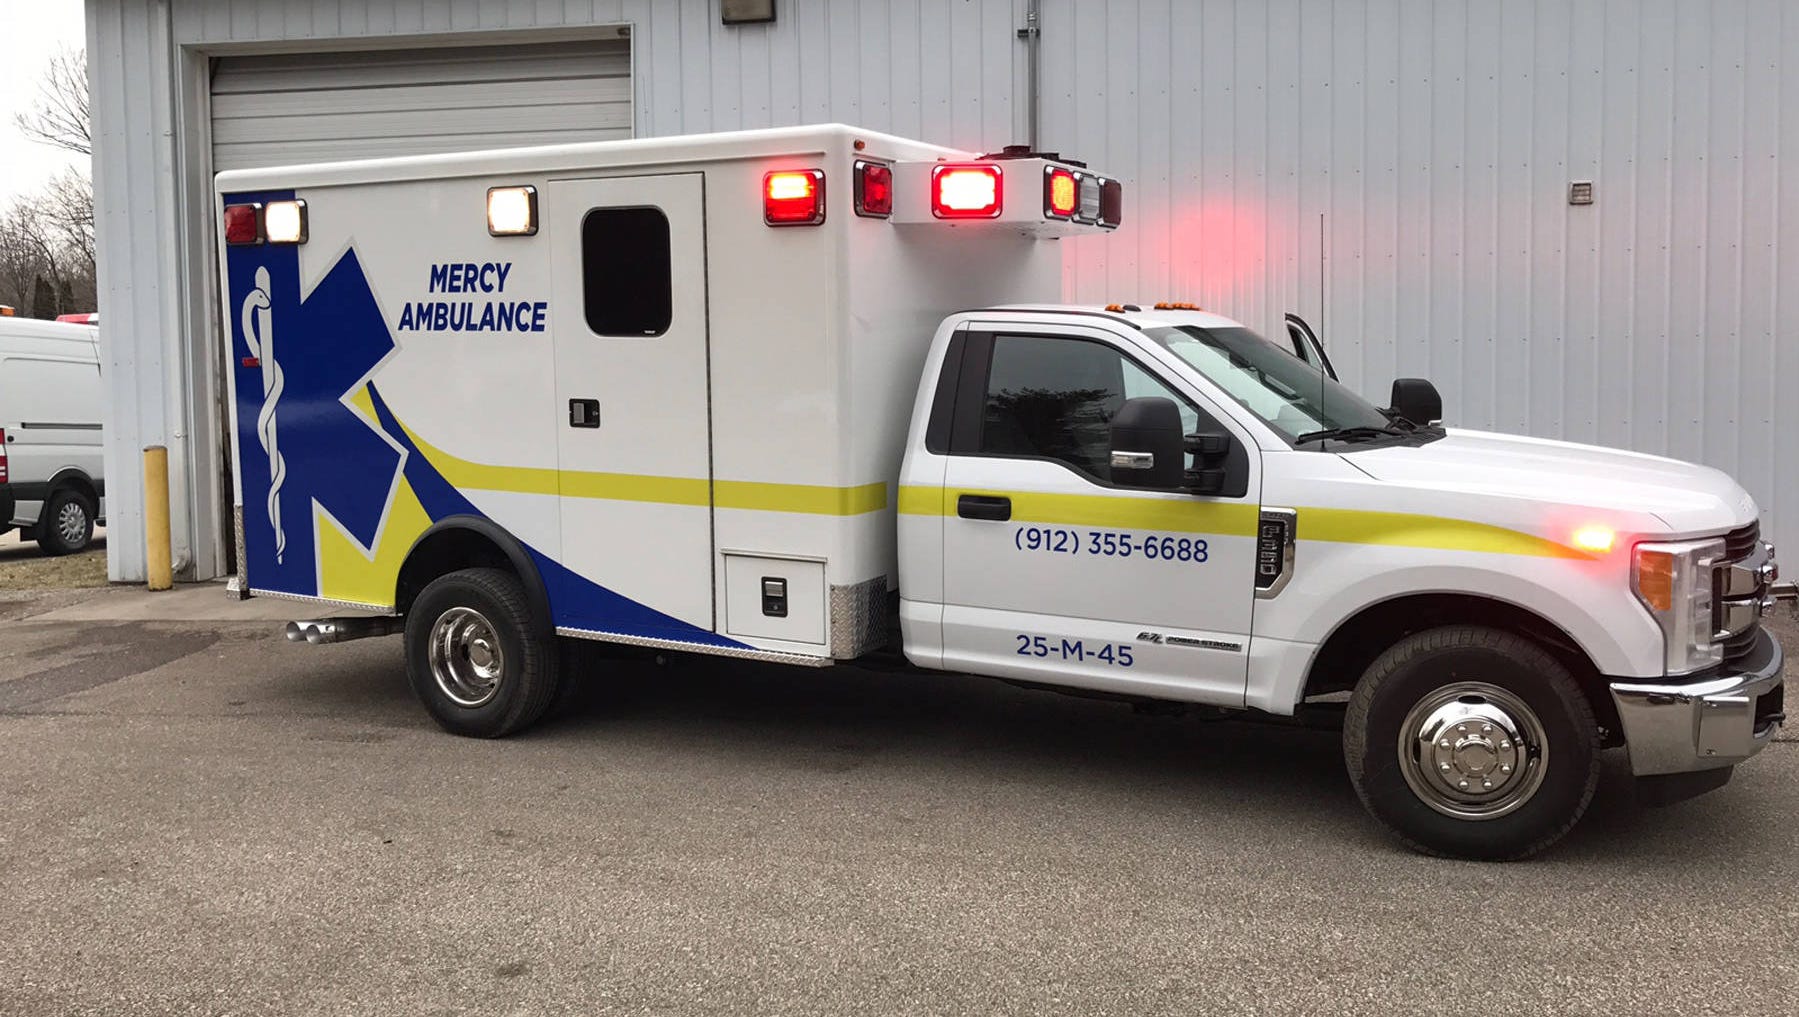 Ambulance vs mercy